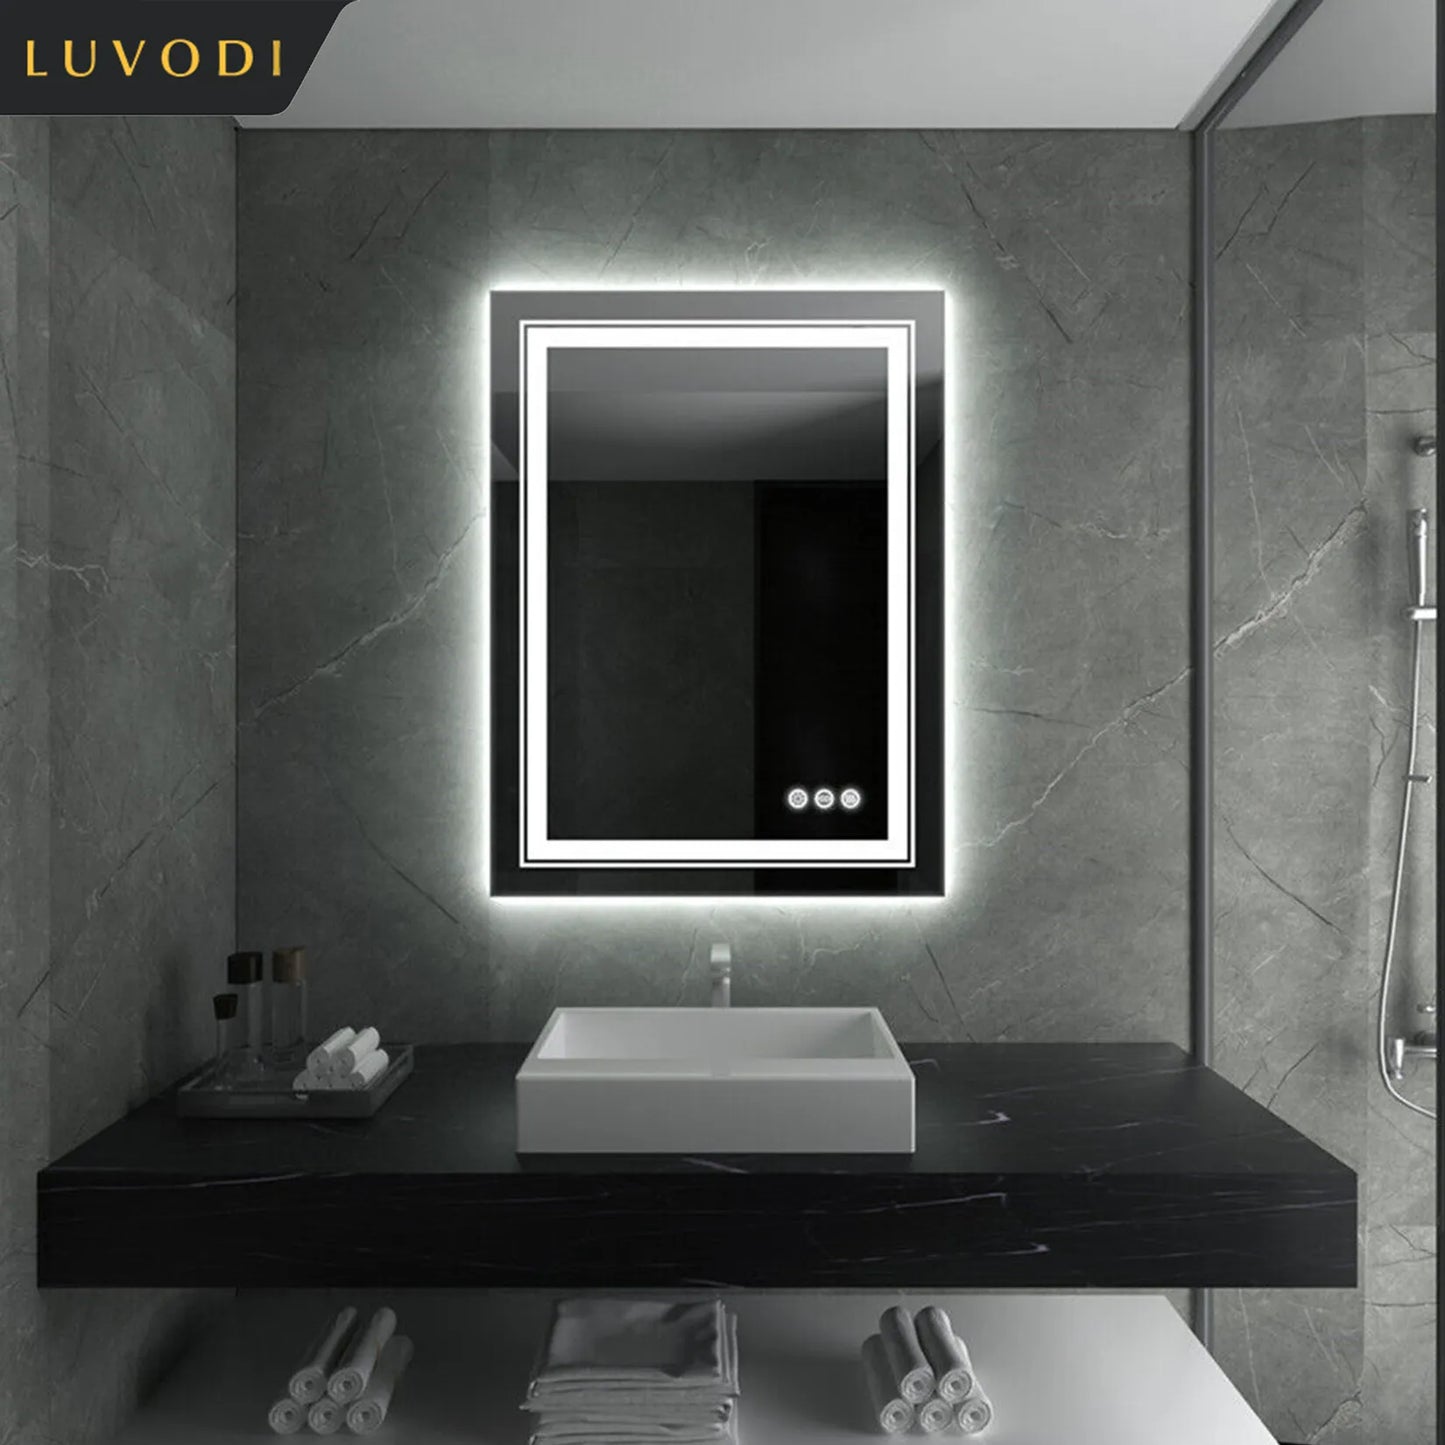 LUVODI Dual Lights Crystal Clear LED Bathroom Mirror Flicking-Free Defog Waterproof Makeup Mirror